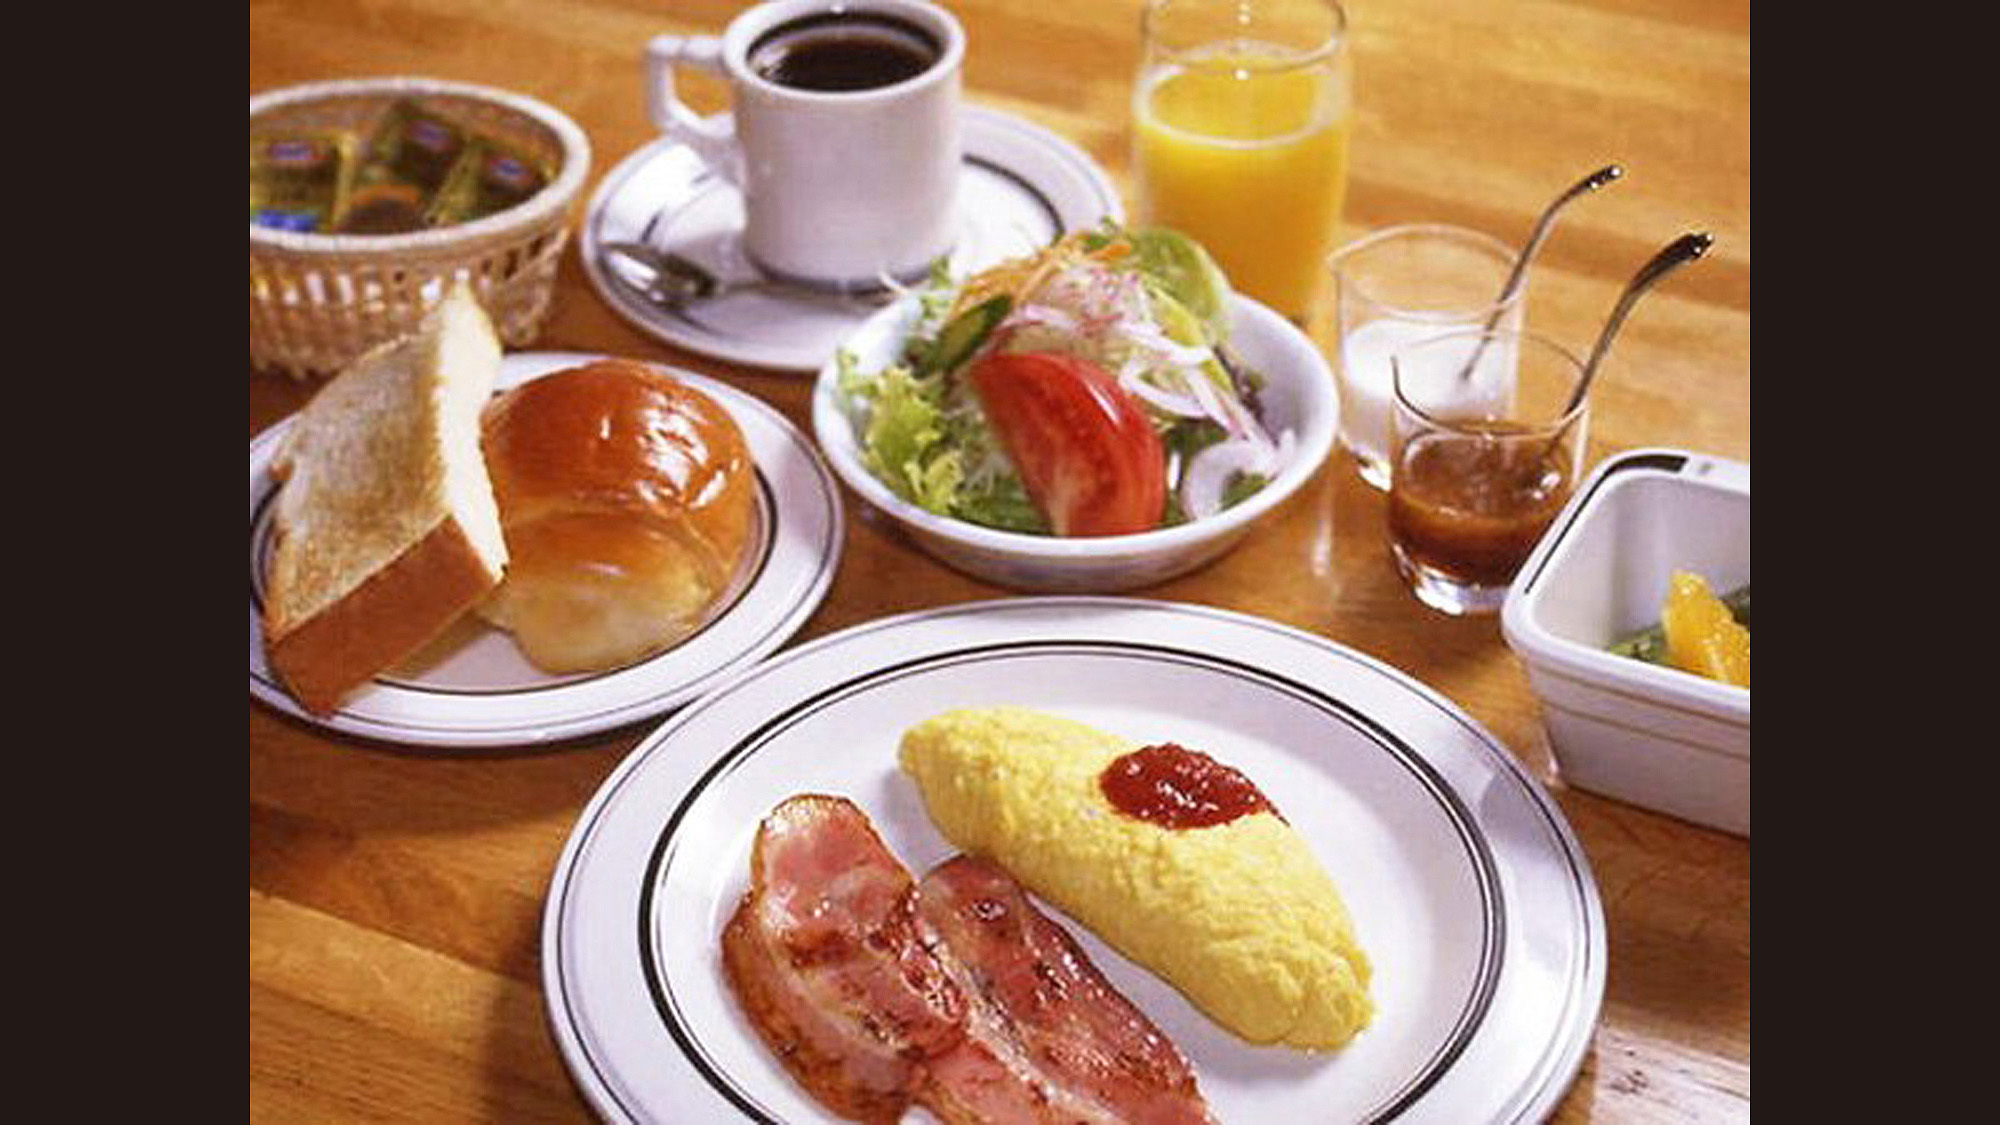 【朝食一例】洋食は付け合わせのメニューをお選びいただけます。